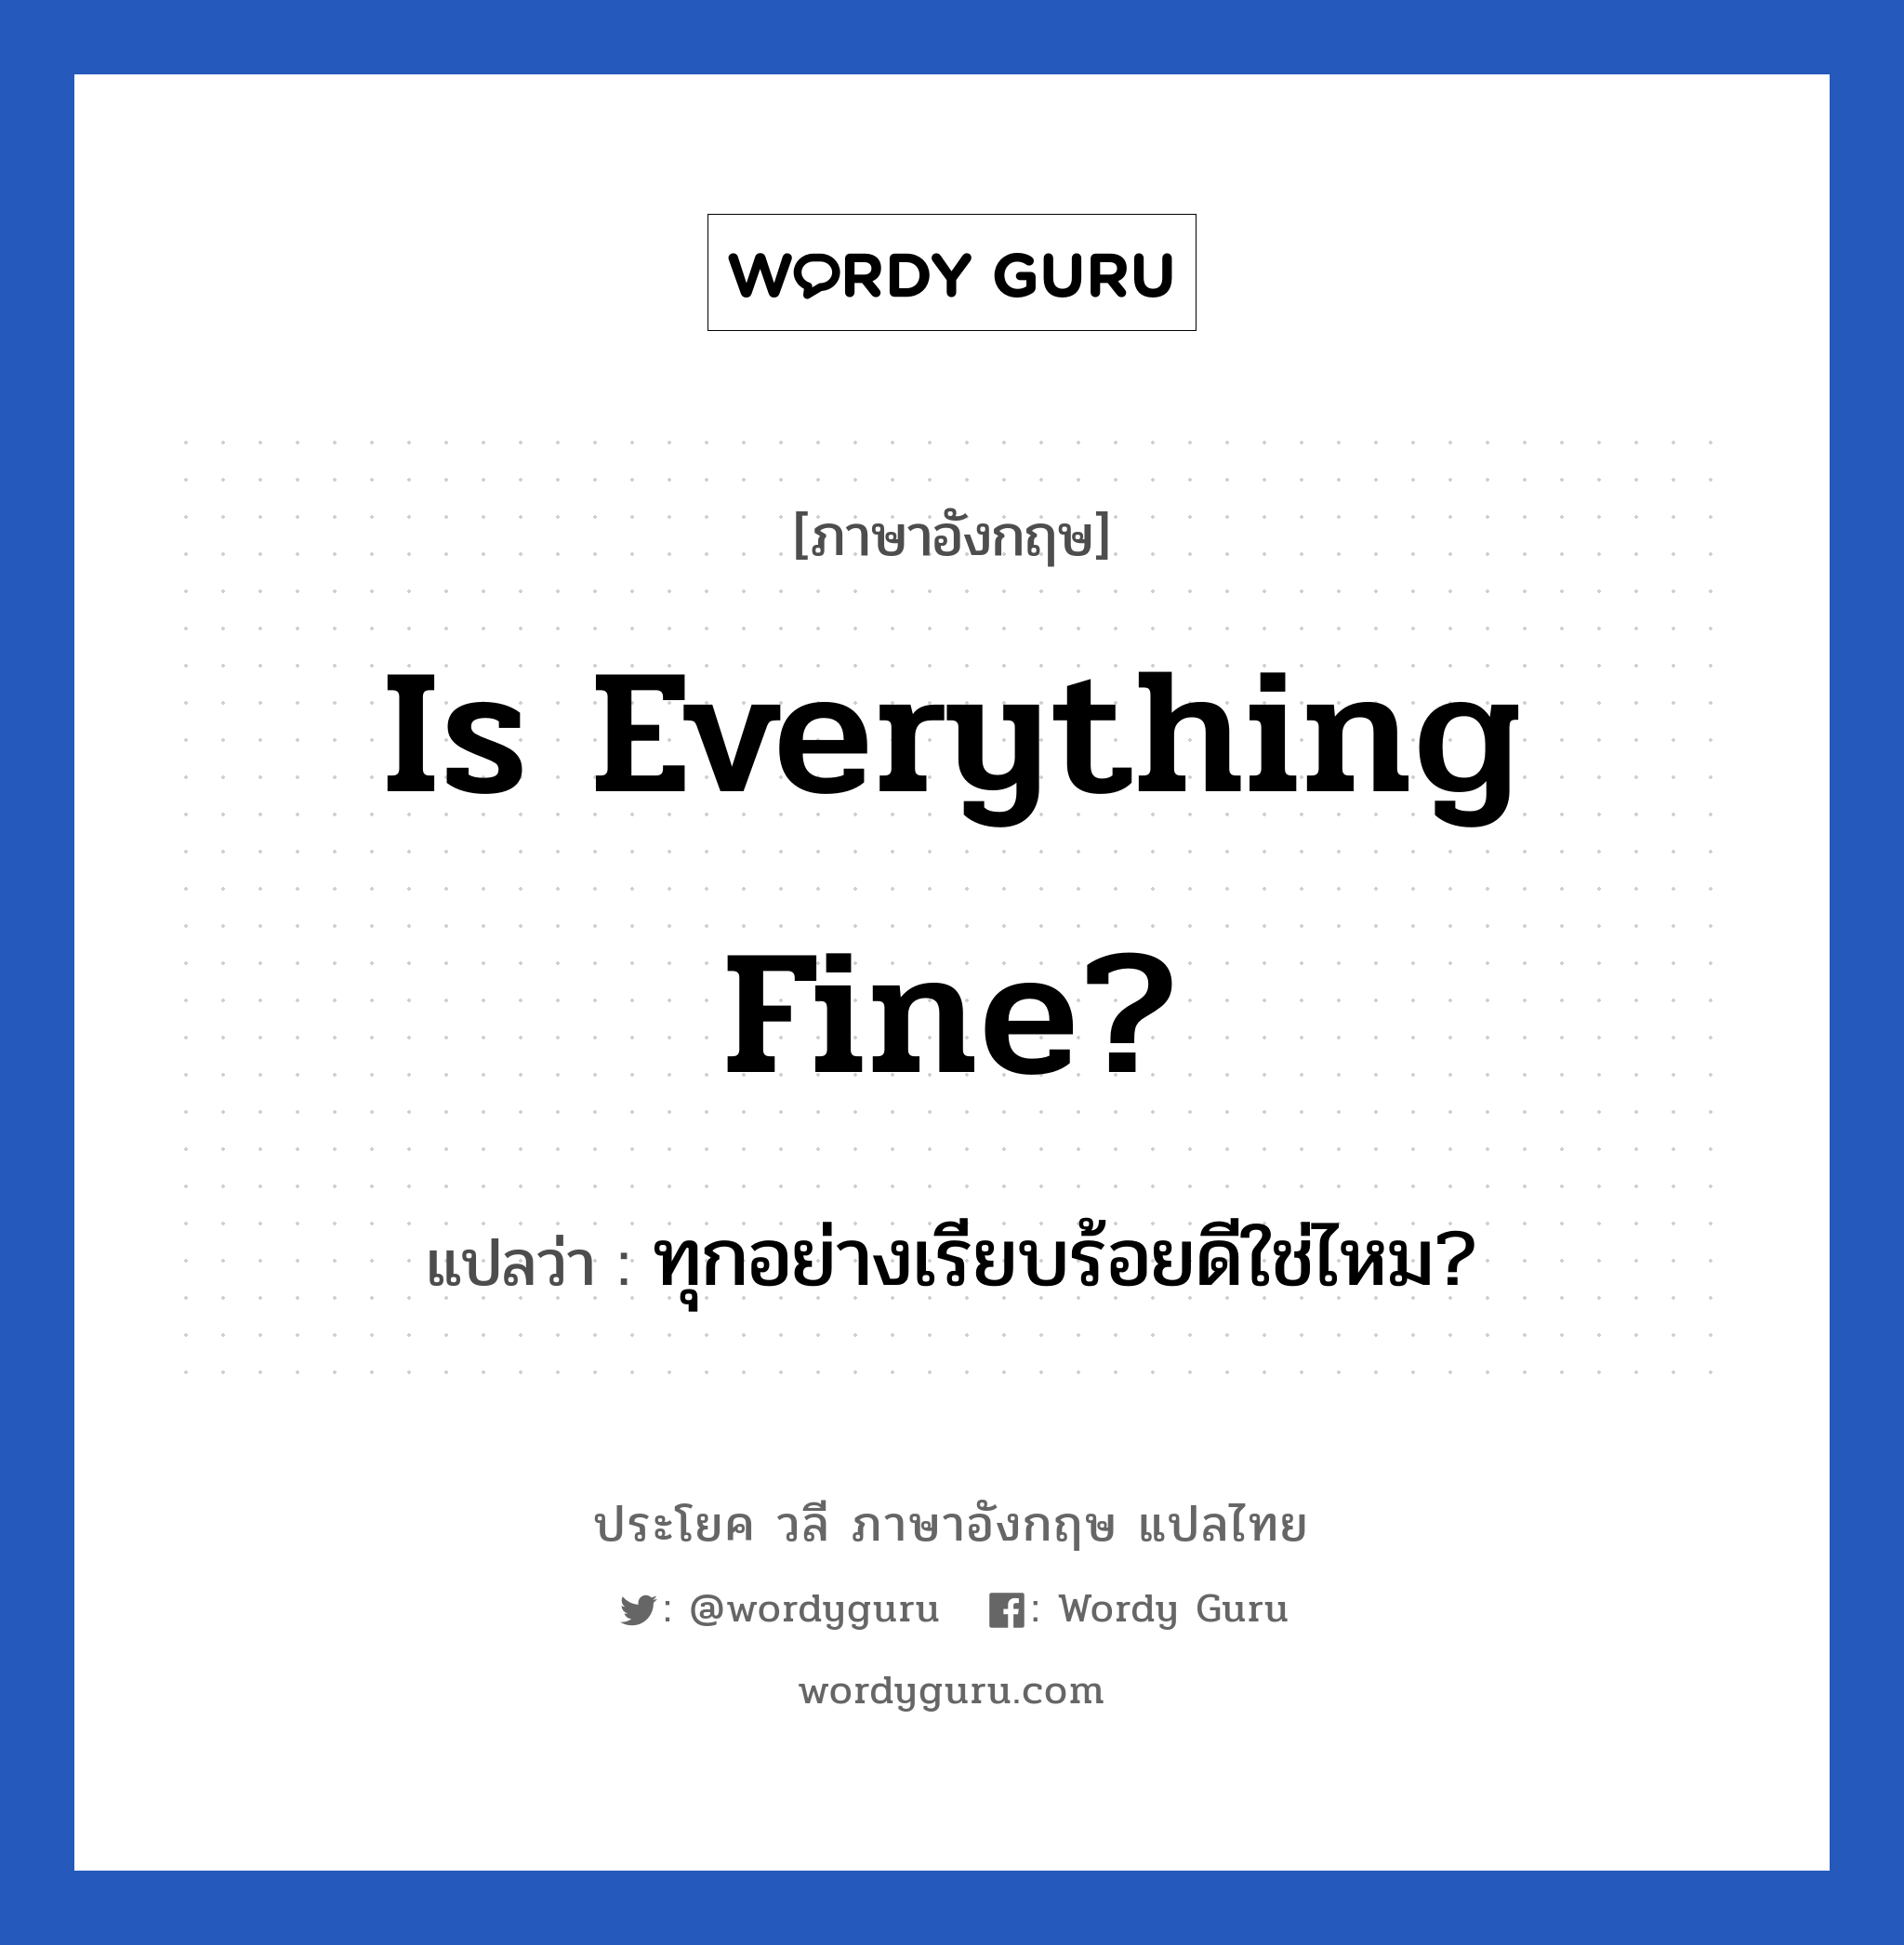 ทุกอย่างเรียบร้อยดีใช่ไหม? ภาษาอังกฤษ?, วลีภาษาอังกฤษ ทุกอย่างเรียบร้อยดีใช่ไหม? แปลว่า Is everything fine?